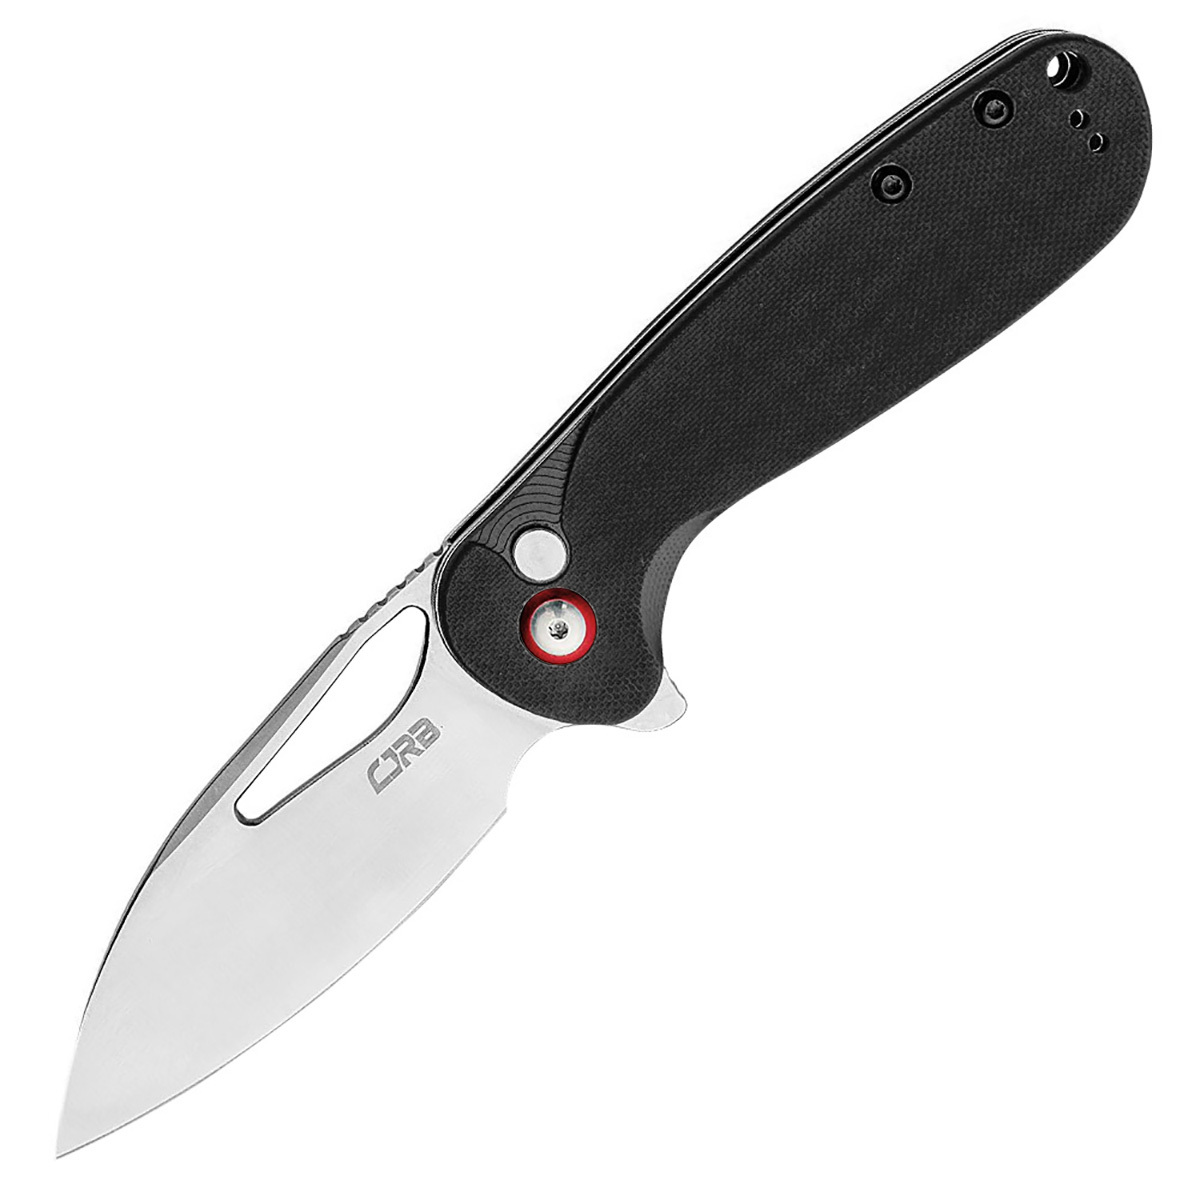 Складной нож CJRB Lago, сталь AR-RPM9, рукоять G10, черный, Бренды, CJRB Cutlery